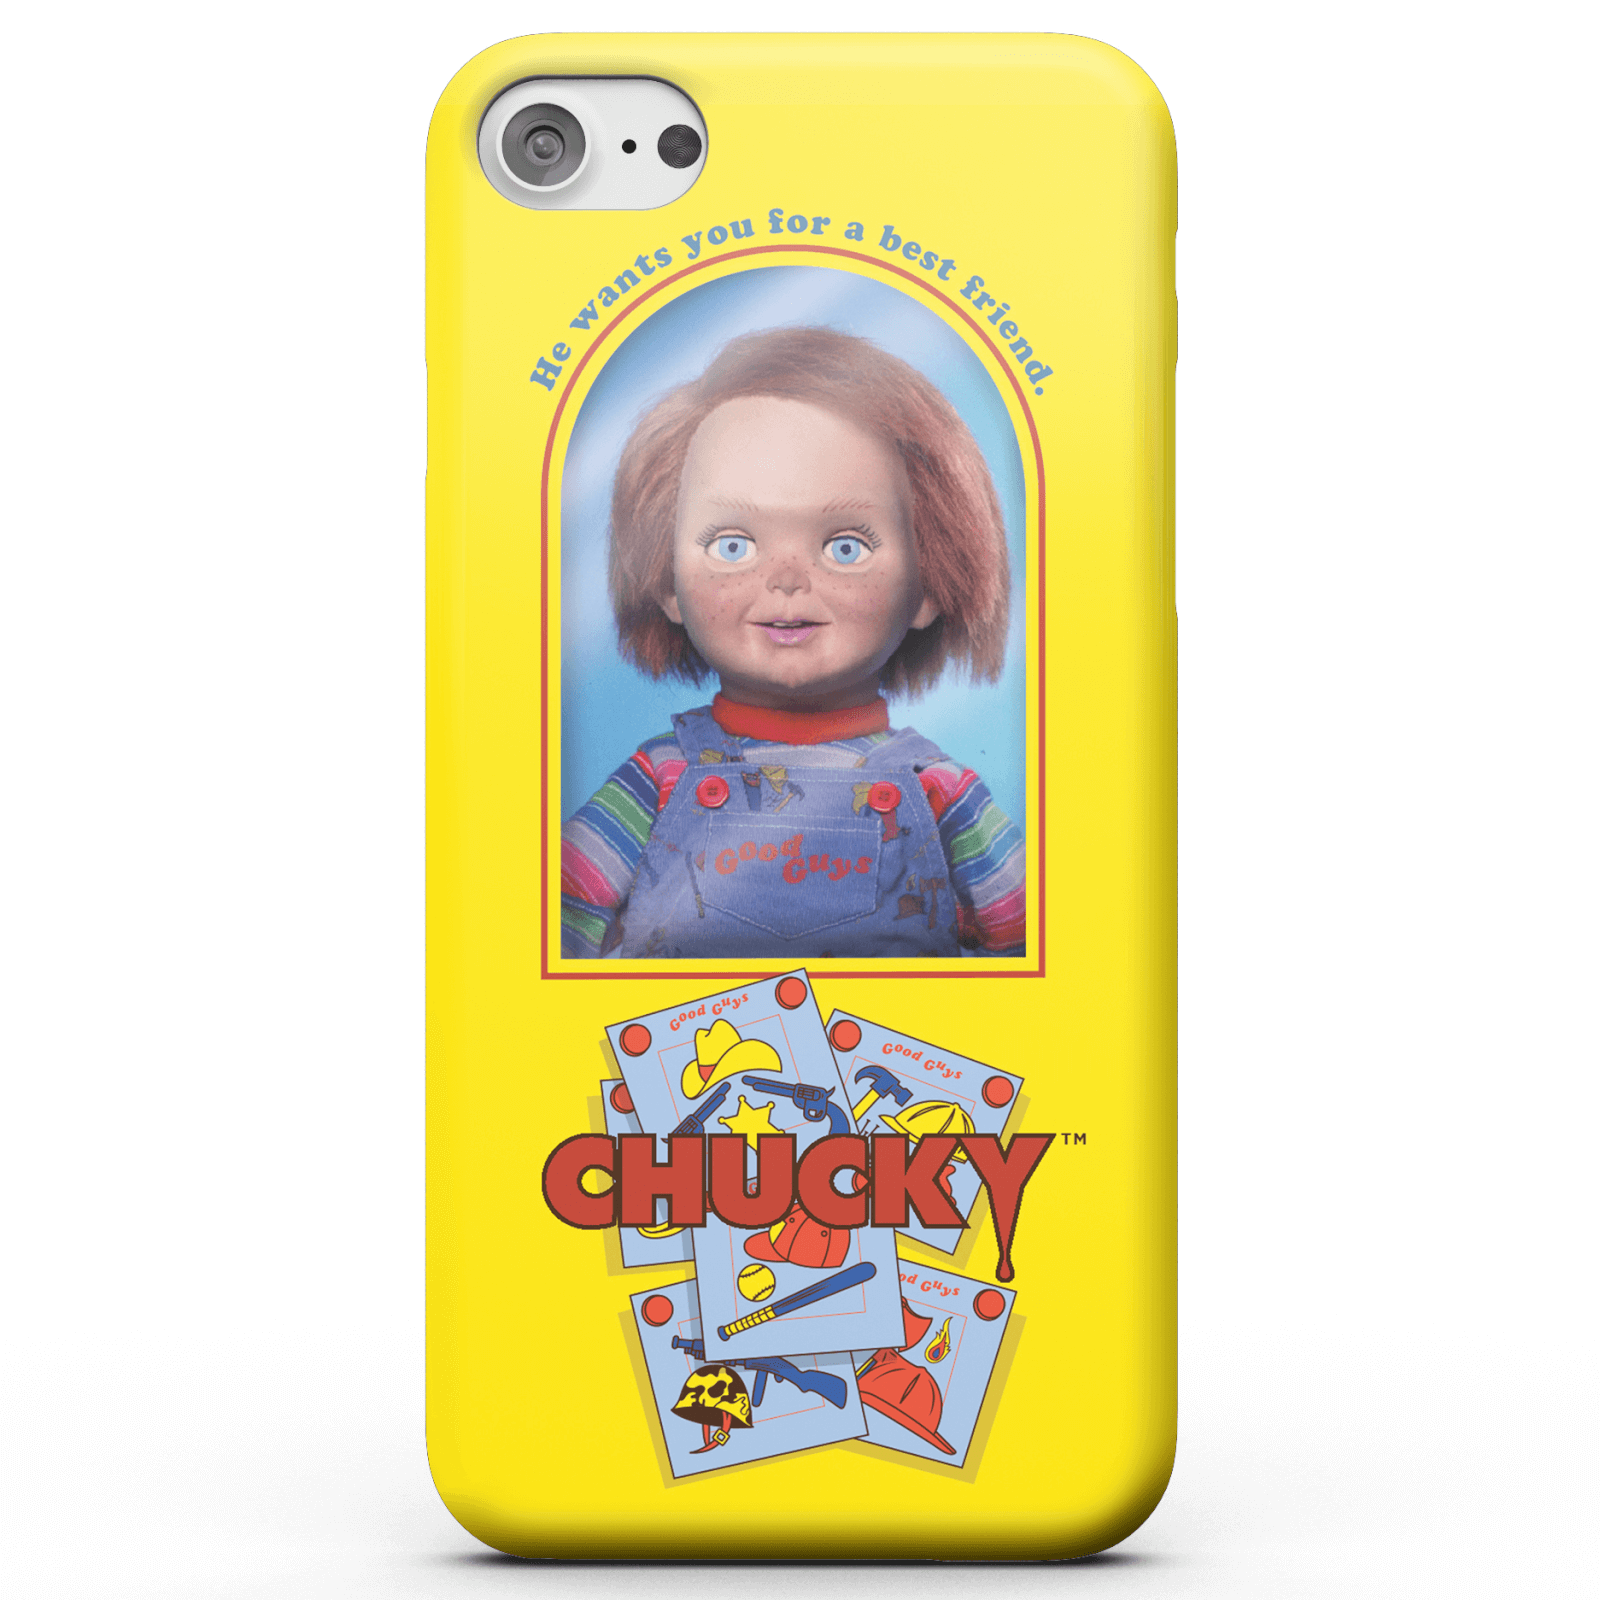 Chucky Good Guys Doll Smartphone Hülle für iPhone und Android - iPhone 5/5s - Snap Hülle Glänzend von Chucky